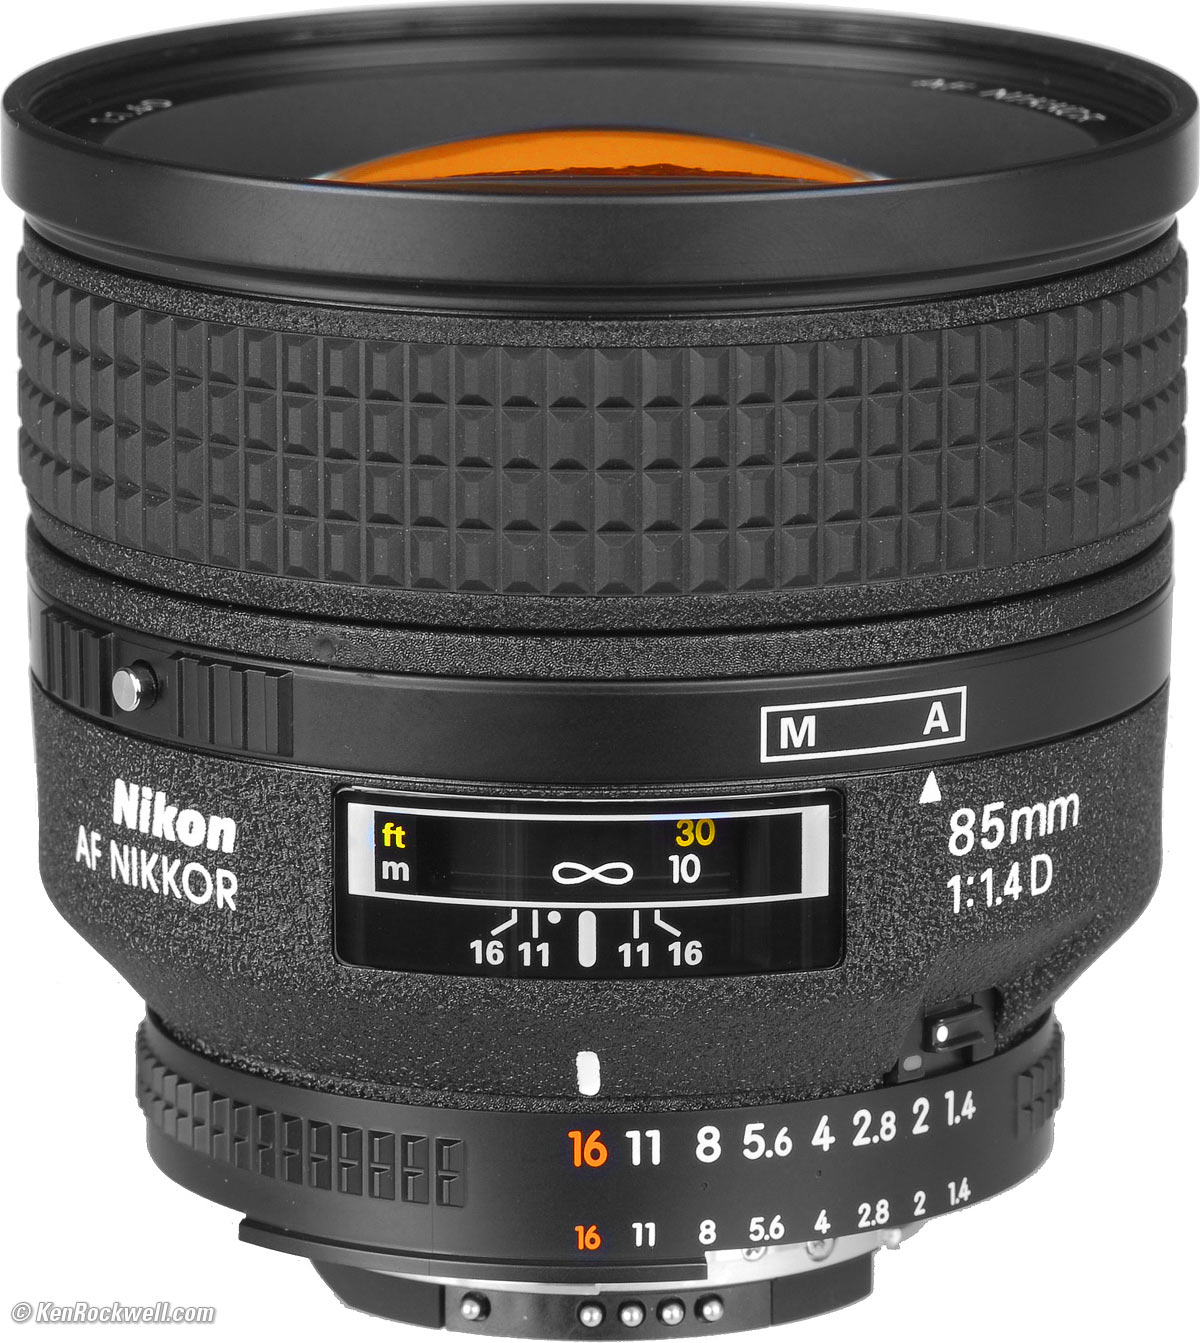 Nikon 85mm f/1.4 D AF Review